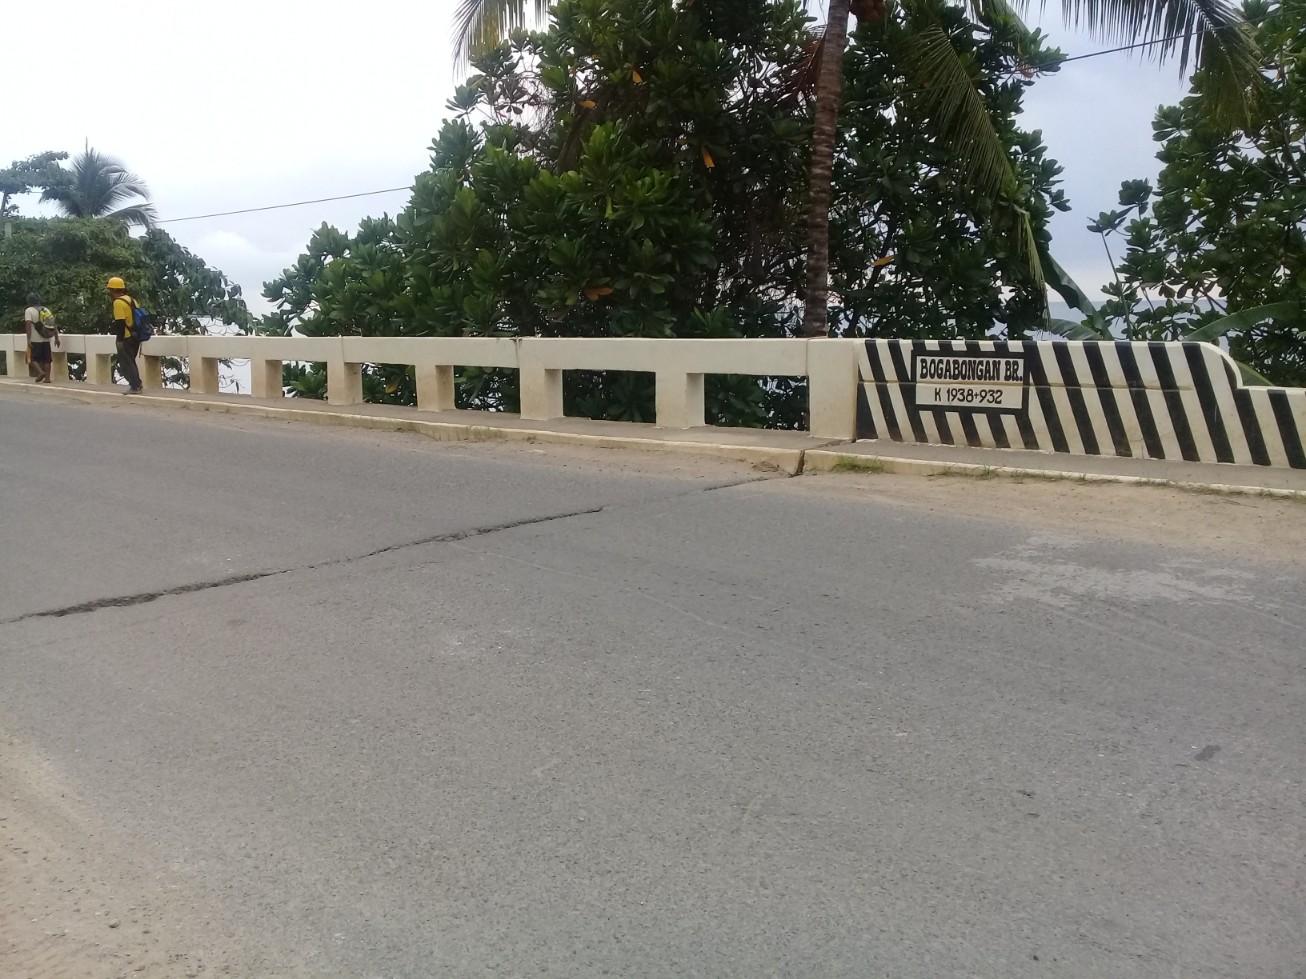 Bogabongan Bridge Repair